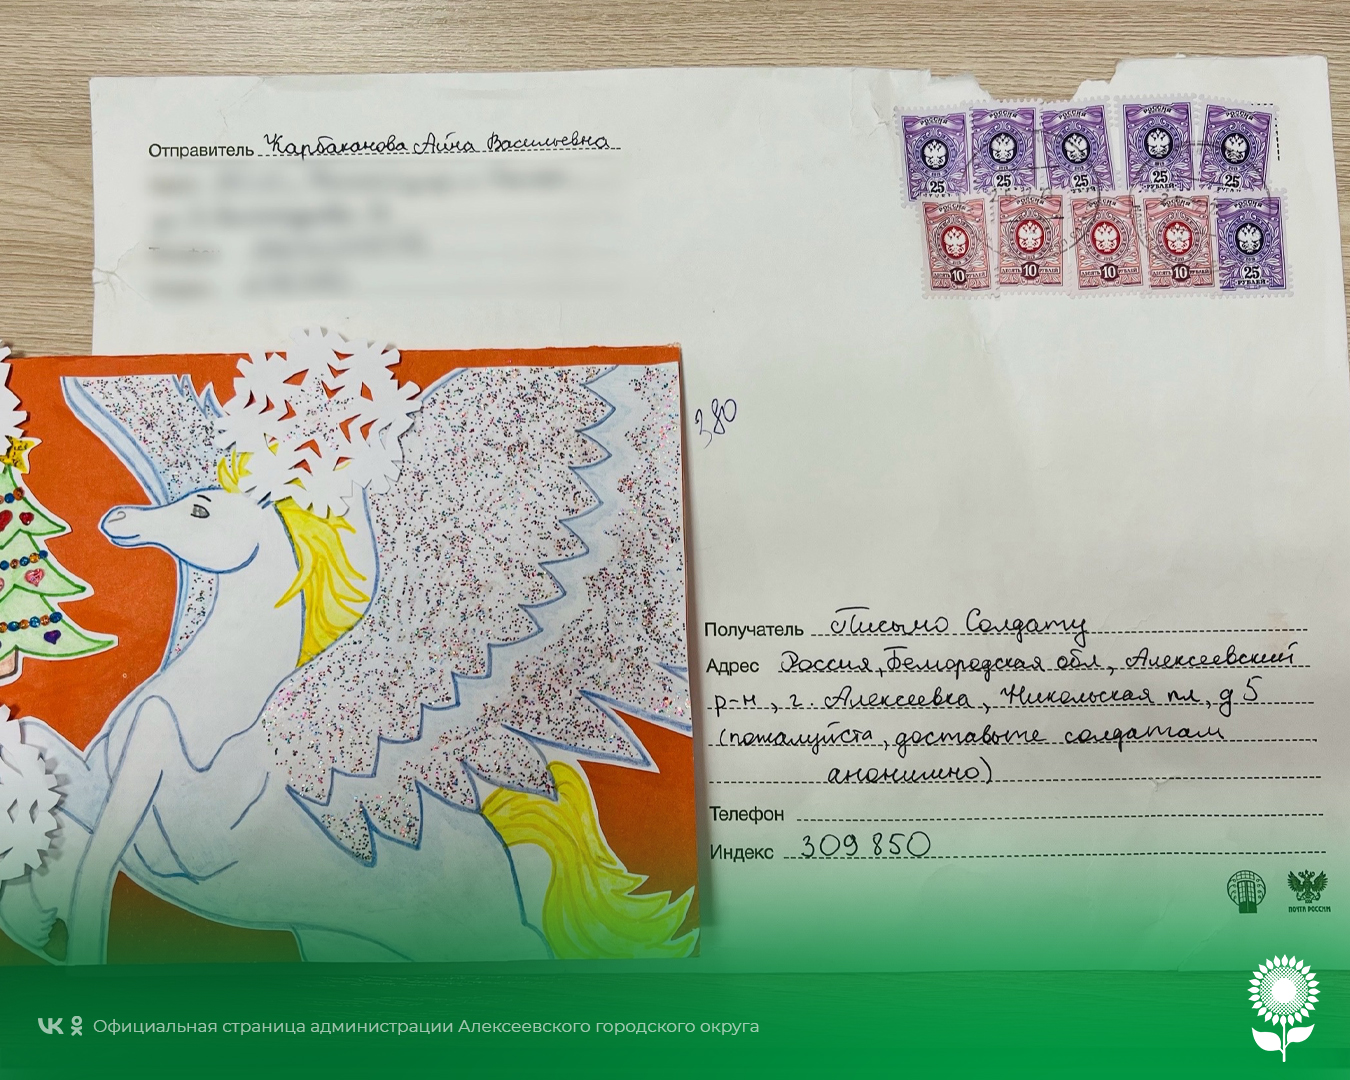 Волонтерский штаб Алексеевского городского округа #МЫВМЕСТЕ на постоянной основе передают нашим военнослужащим детские письма и открытки.